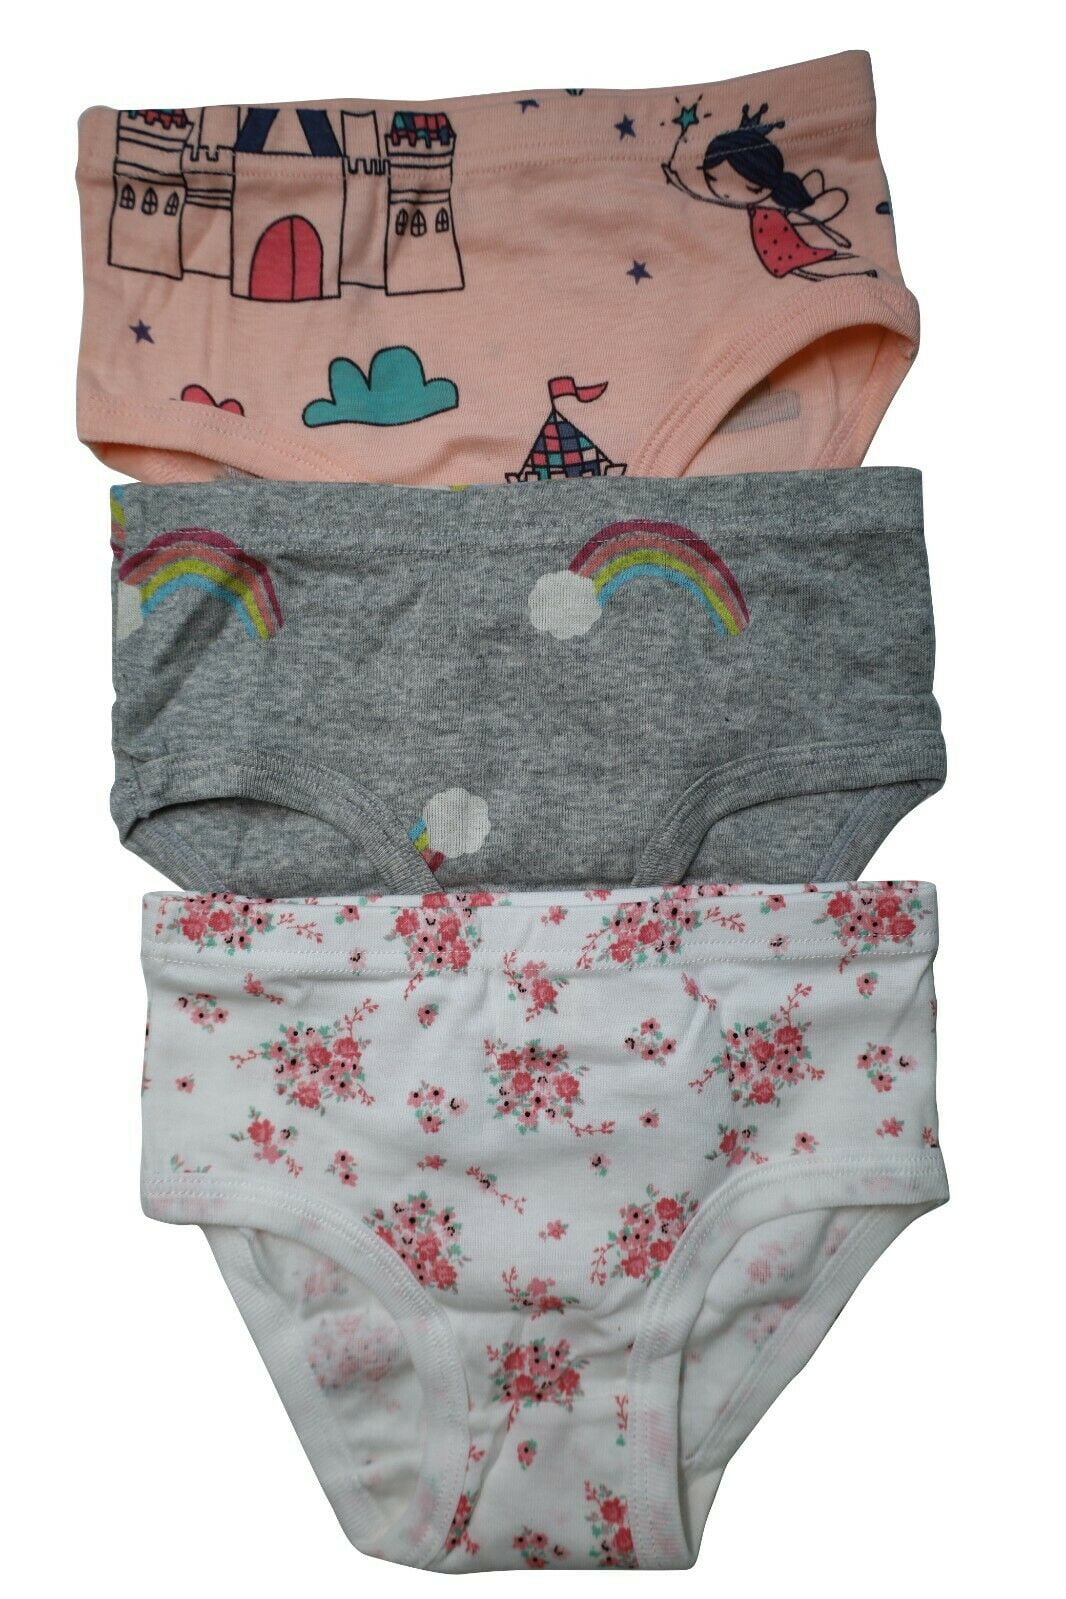 6 Packs Toddler Little Girls Kids Underwear Cotton Briefs Size 2T 3T 4T 5T  6T